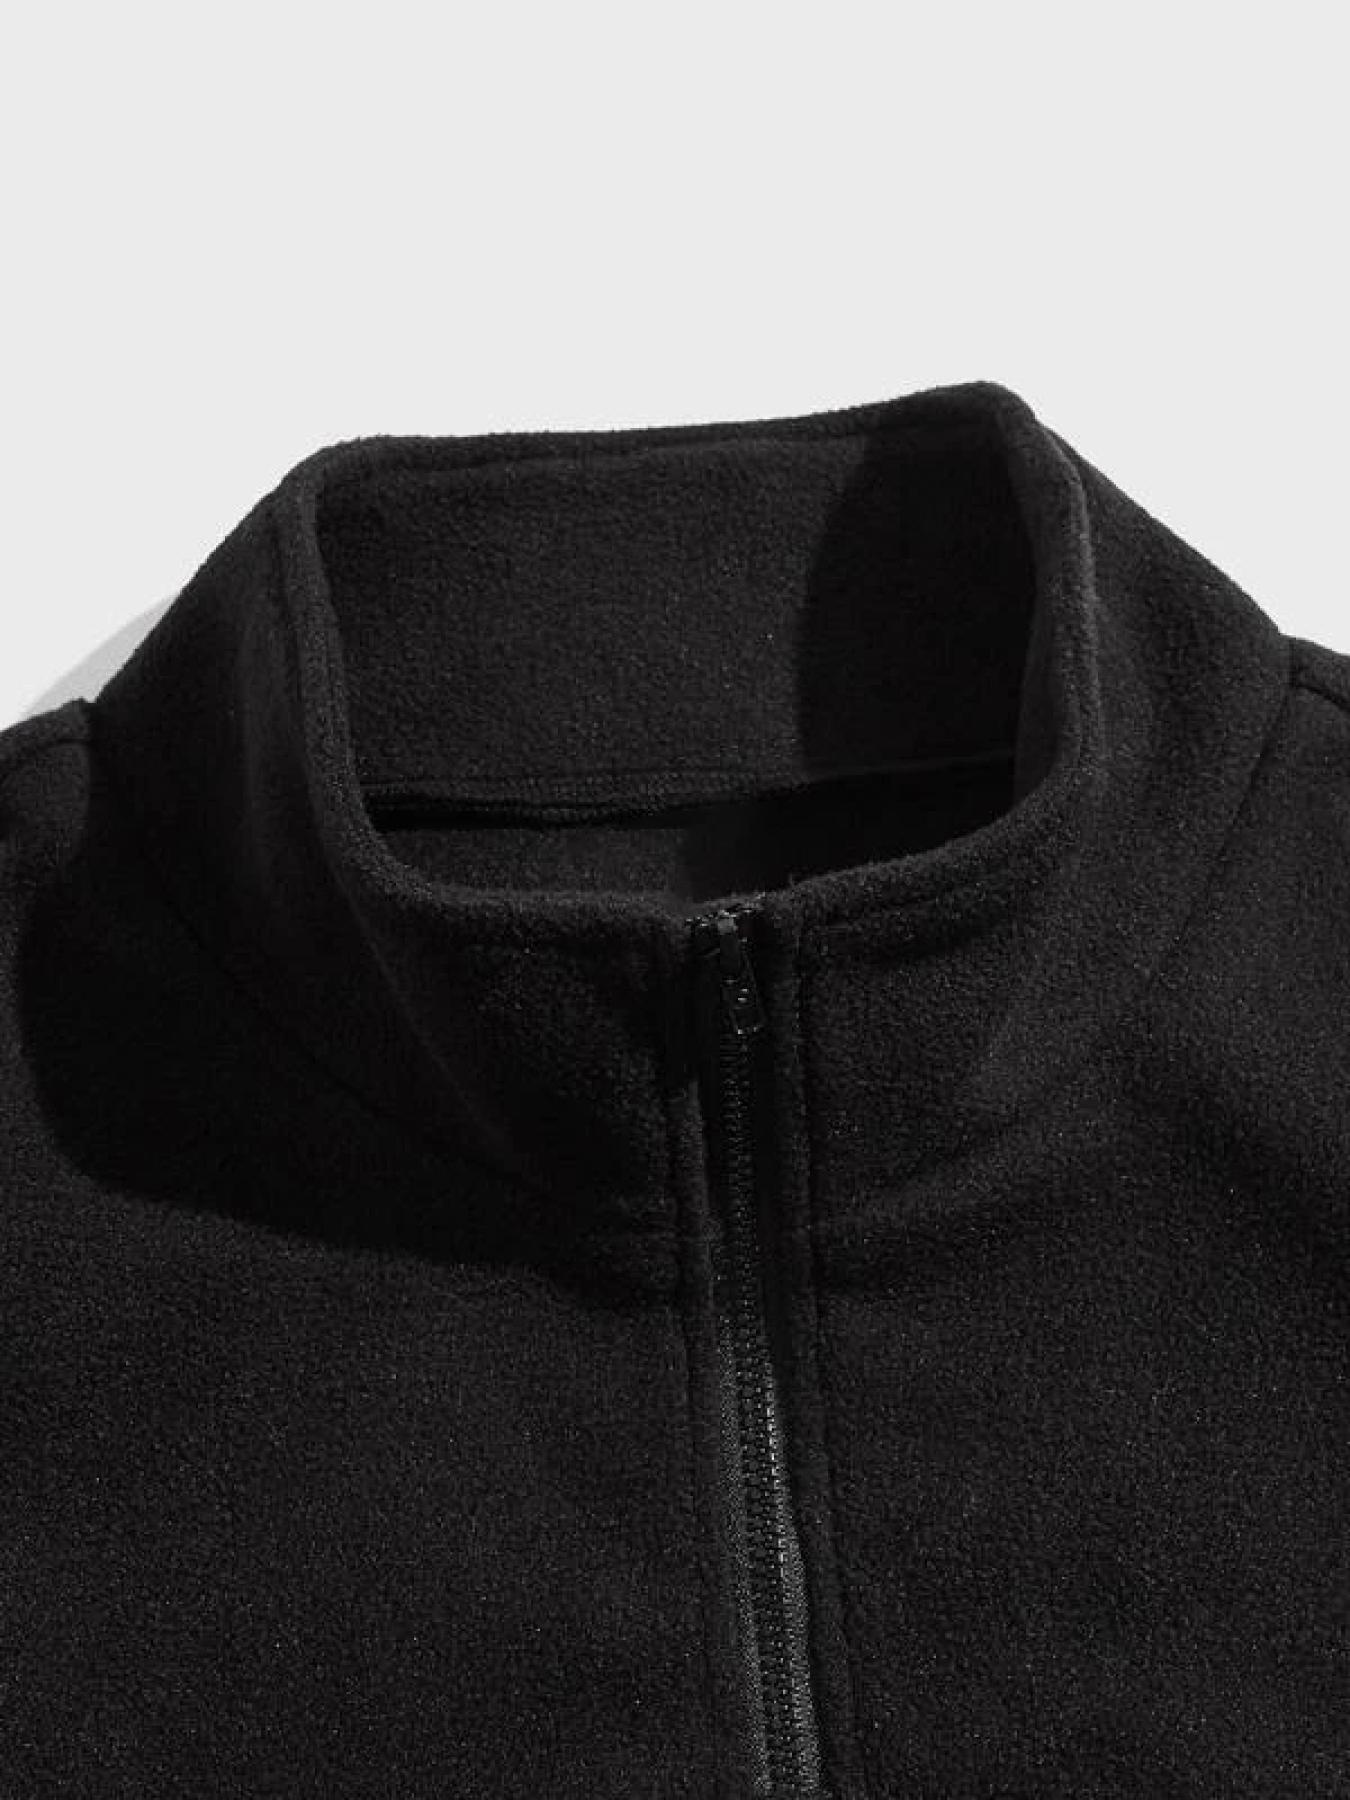 Men's Trendy Stand Collar Half-zip Long Sleeve Sweatshirt